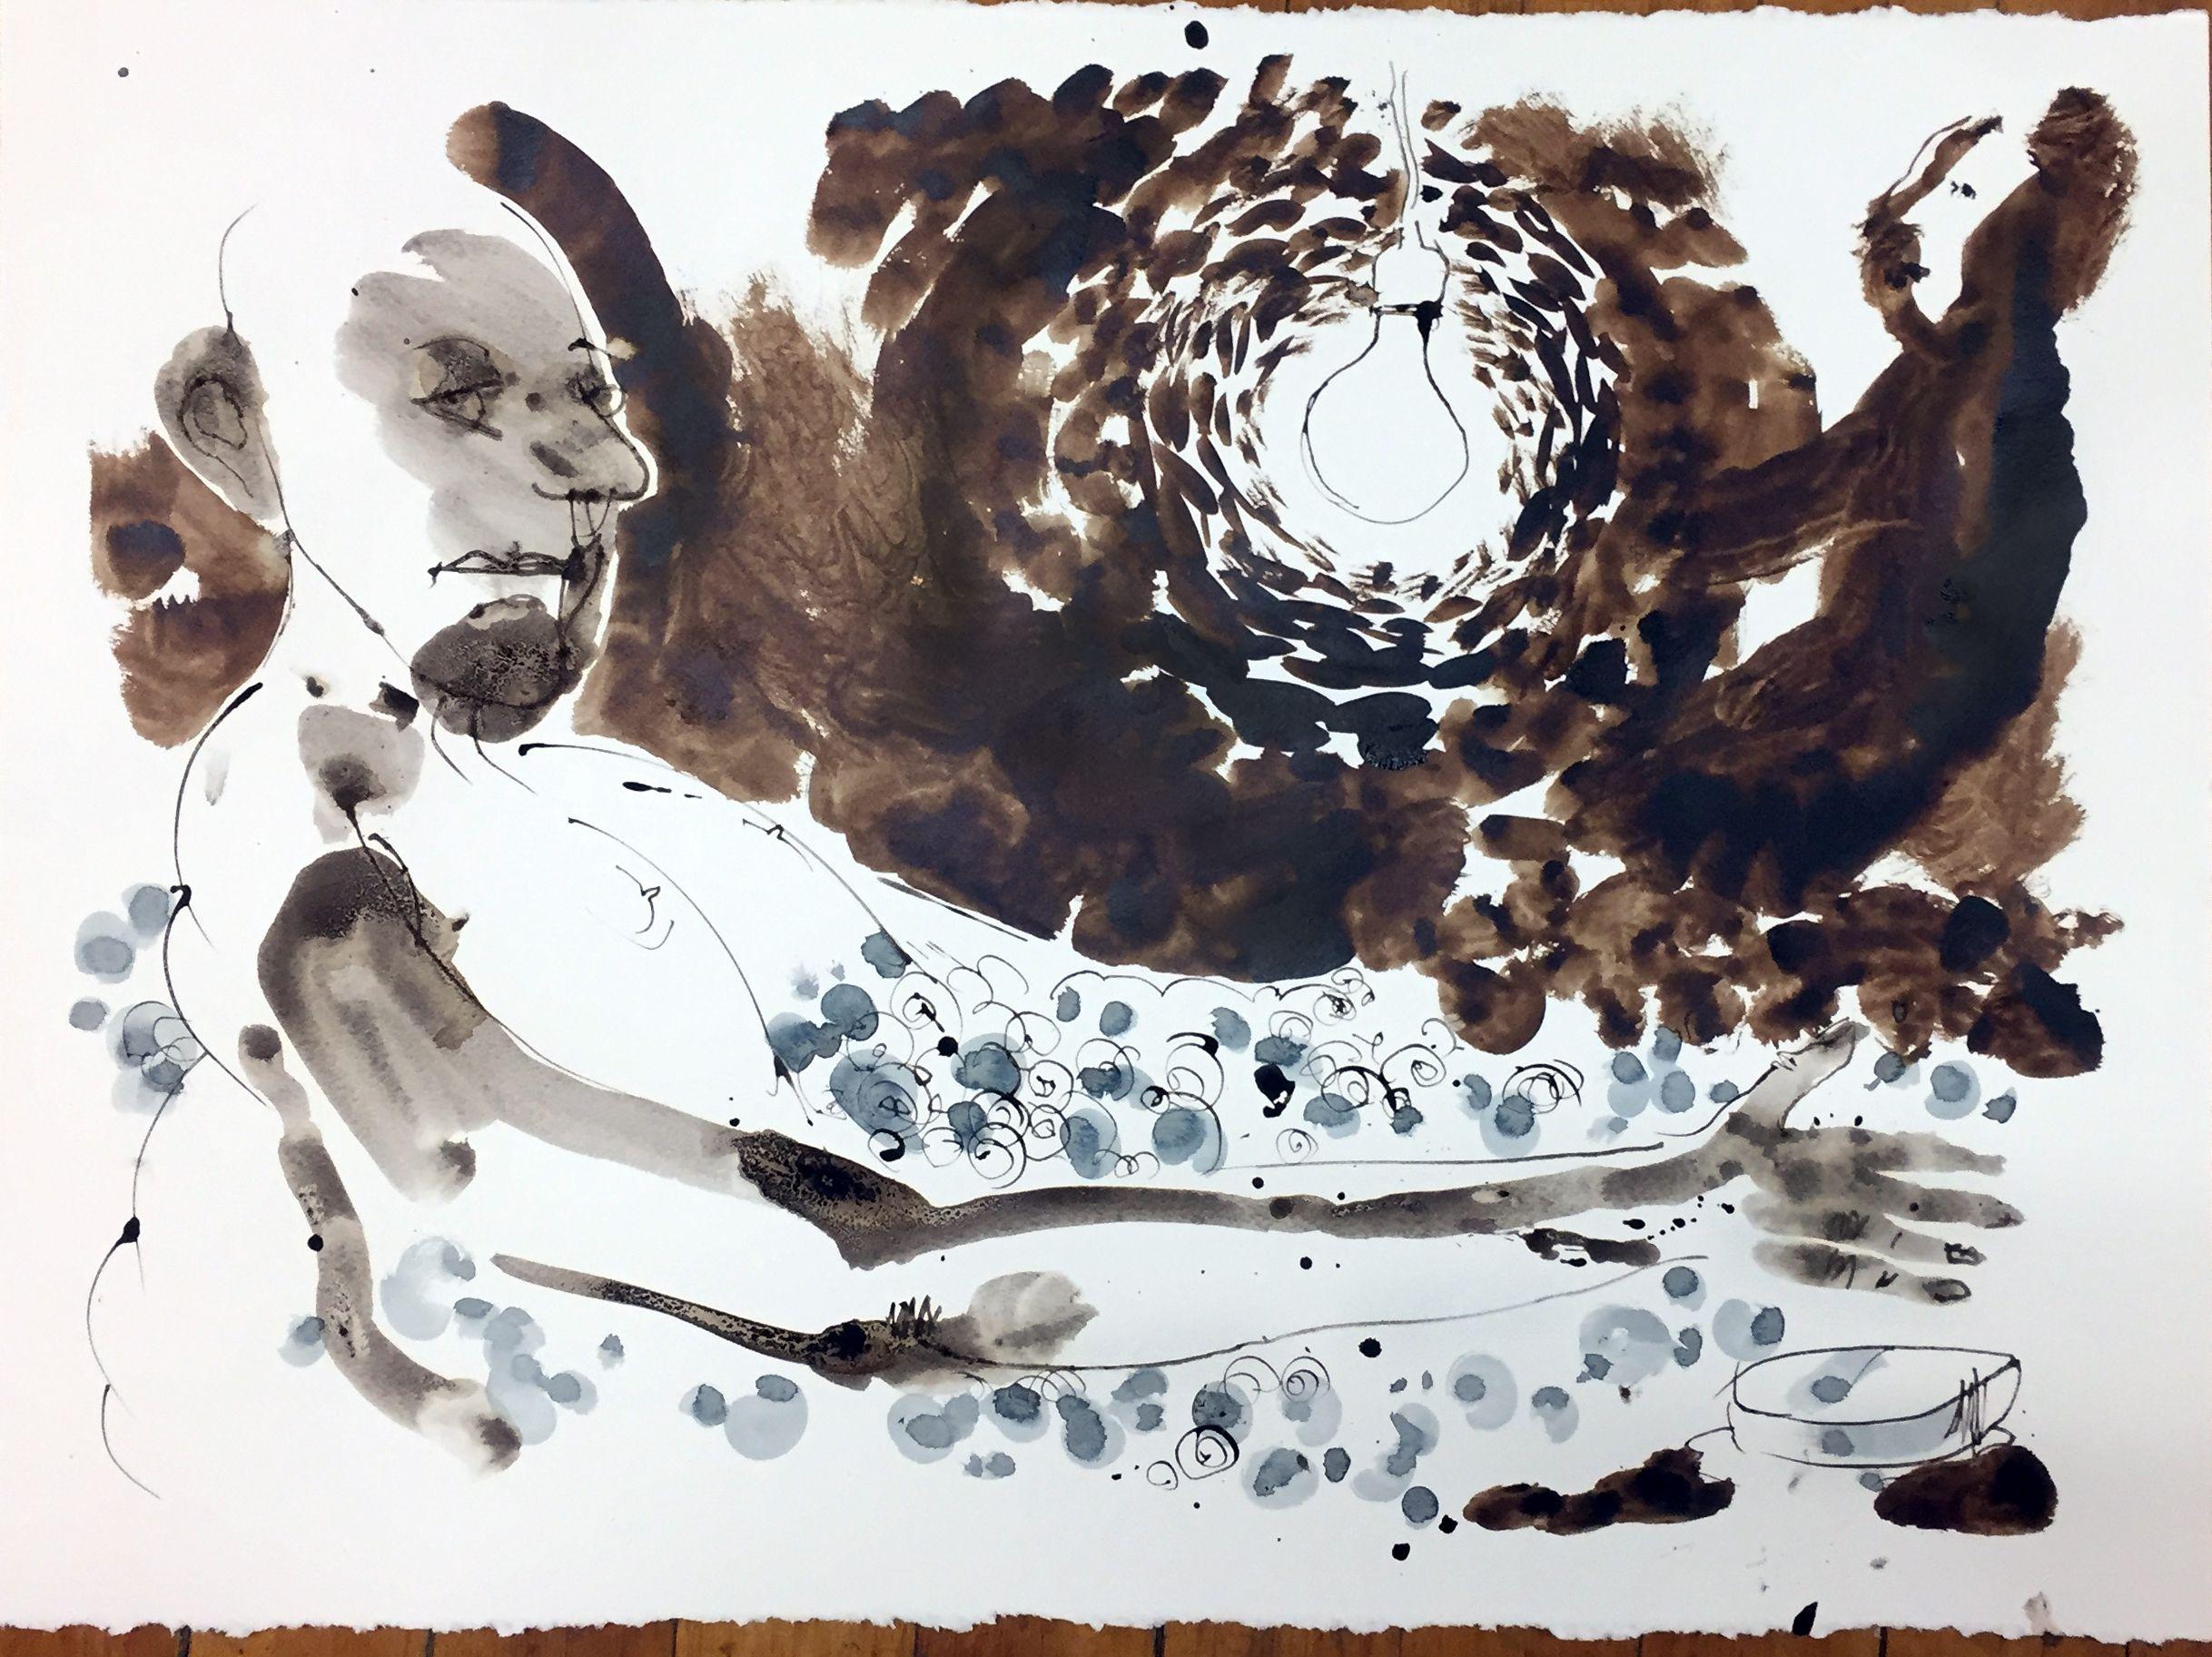 bald man in a bubble bath, Drawing, Pen & Ink on Watercolor Paper - Art by Edward Zelinsky